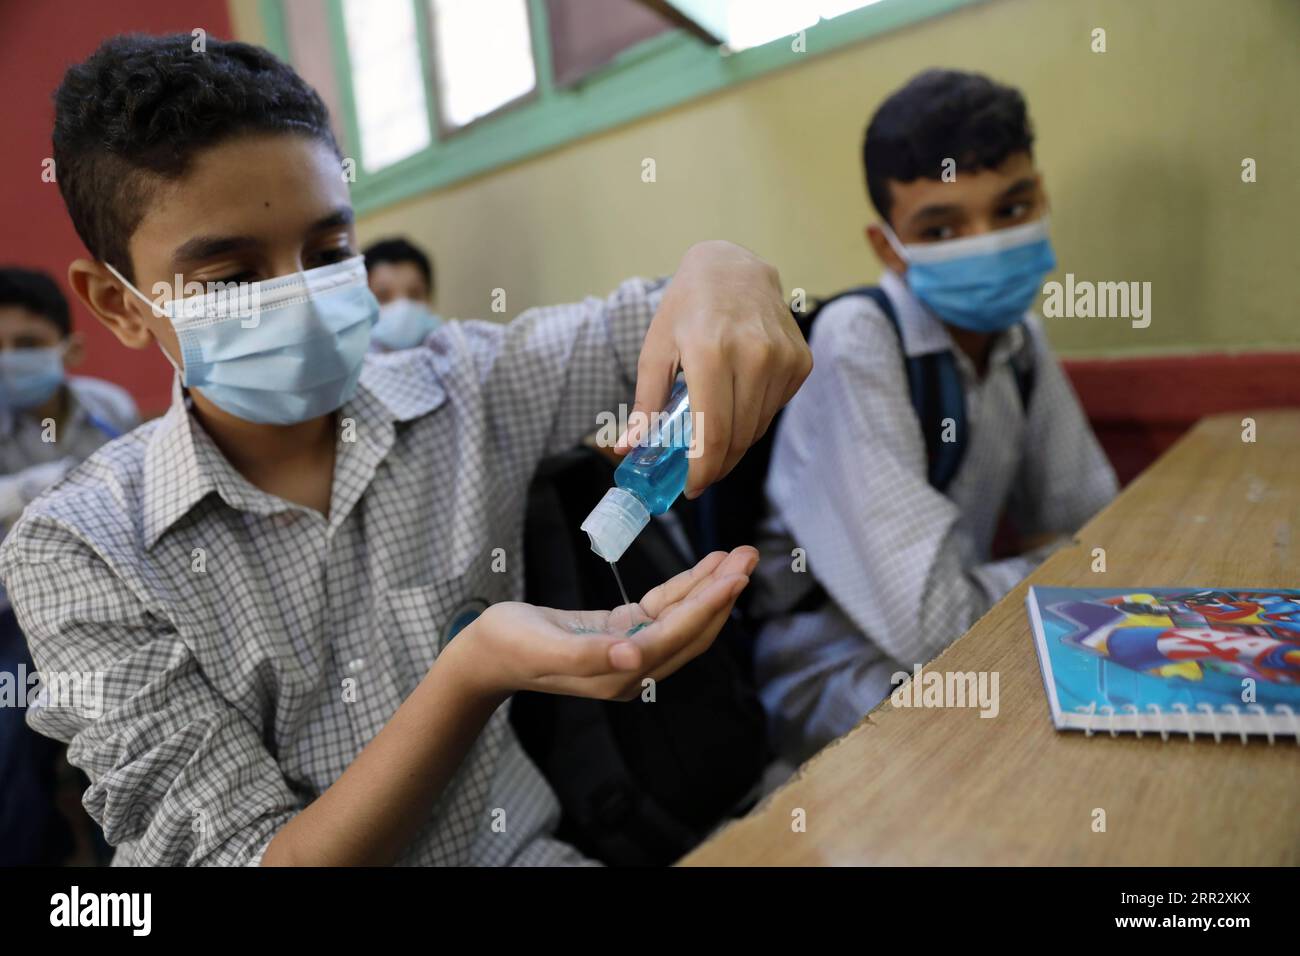 201017 -- CAIRO, 17 ottobre 2020 -- Uno studente usa disinfettante durante una lezione in una scuola al Cairo, in Egitto, 17 ottobre 2020. L'Egitto ha ufficialmente riaperto sabato decine di migliaia di scuole per milioni di studenti in tutto il paese per iniziare il nuovo anno accademico, attuando al contempo misure precauzionali contro la COVID-19. EGYPT-CAIRO-COVID-19-SCHOOL-REOPEN AhmedxGomaa PUBLICATIONxNOTxINxCHN Foto Stock